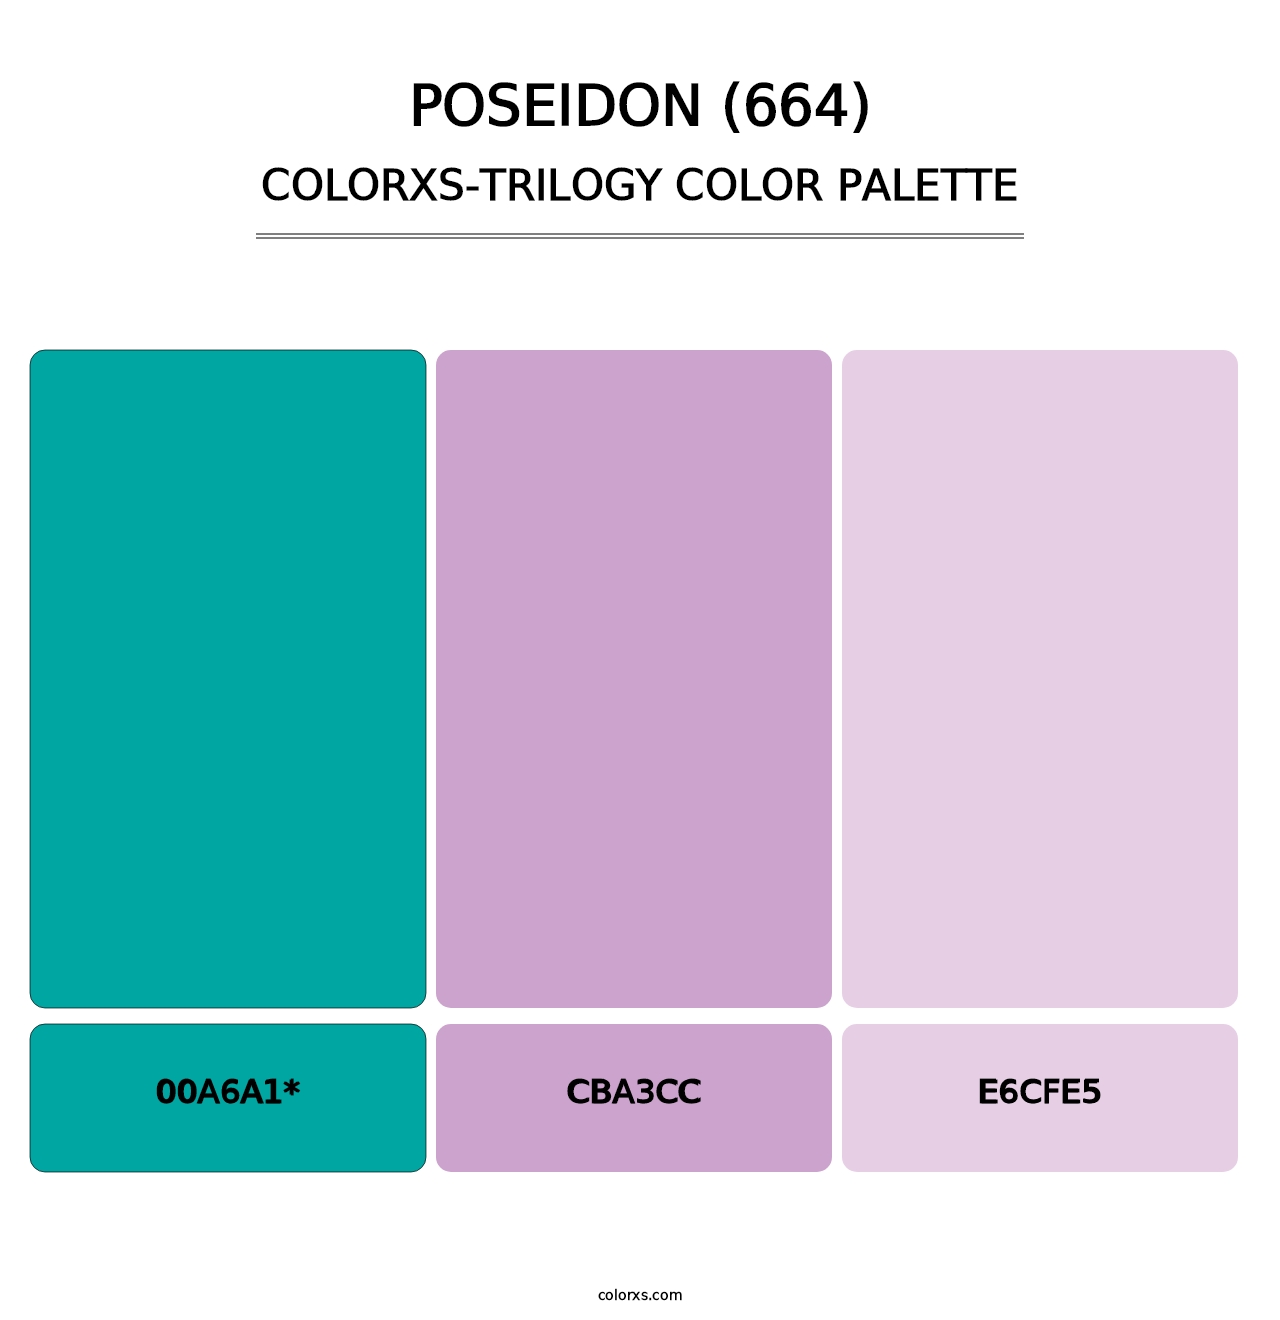 Poseidon (664) - Colorxs Trilogy Palette